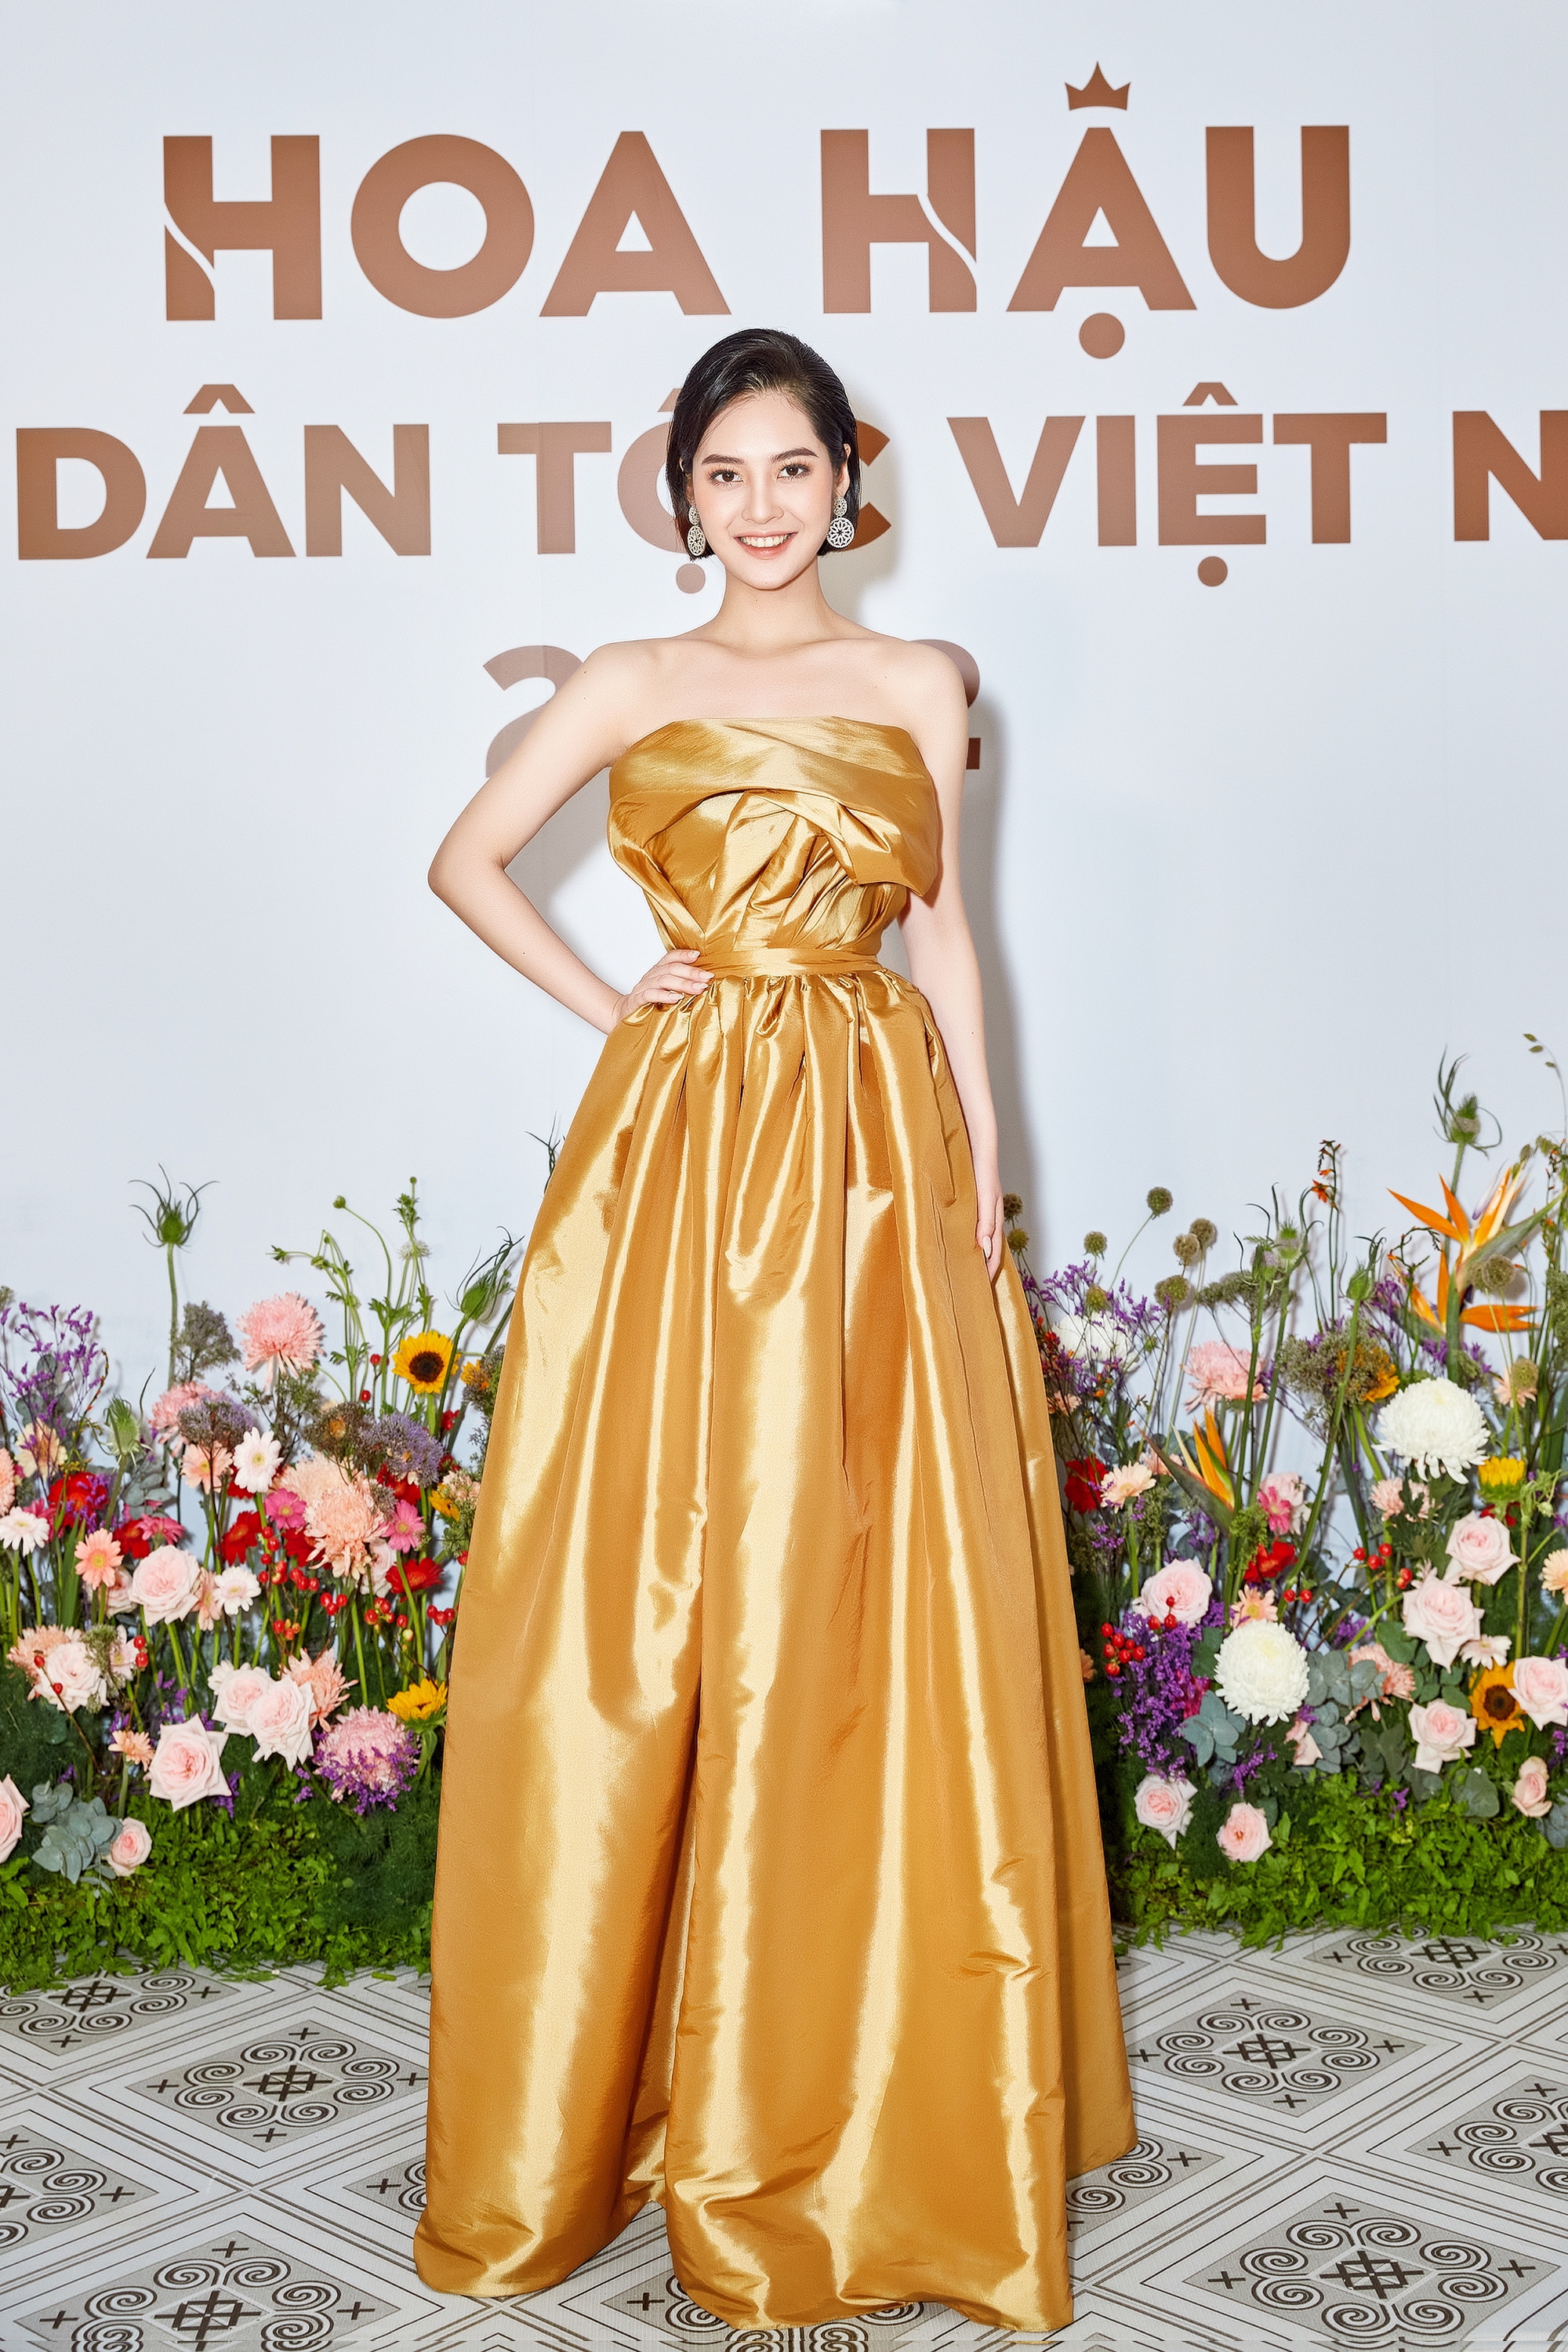 Loạt chiến binh mạnh trong top 30 Hoa hậu các dân tộc Việt Nam khu vực phía Nam: Nhan sắc và học vấn gây bất ngờ - Ảnh 3.